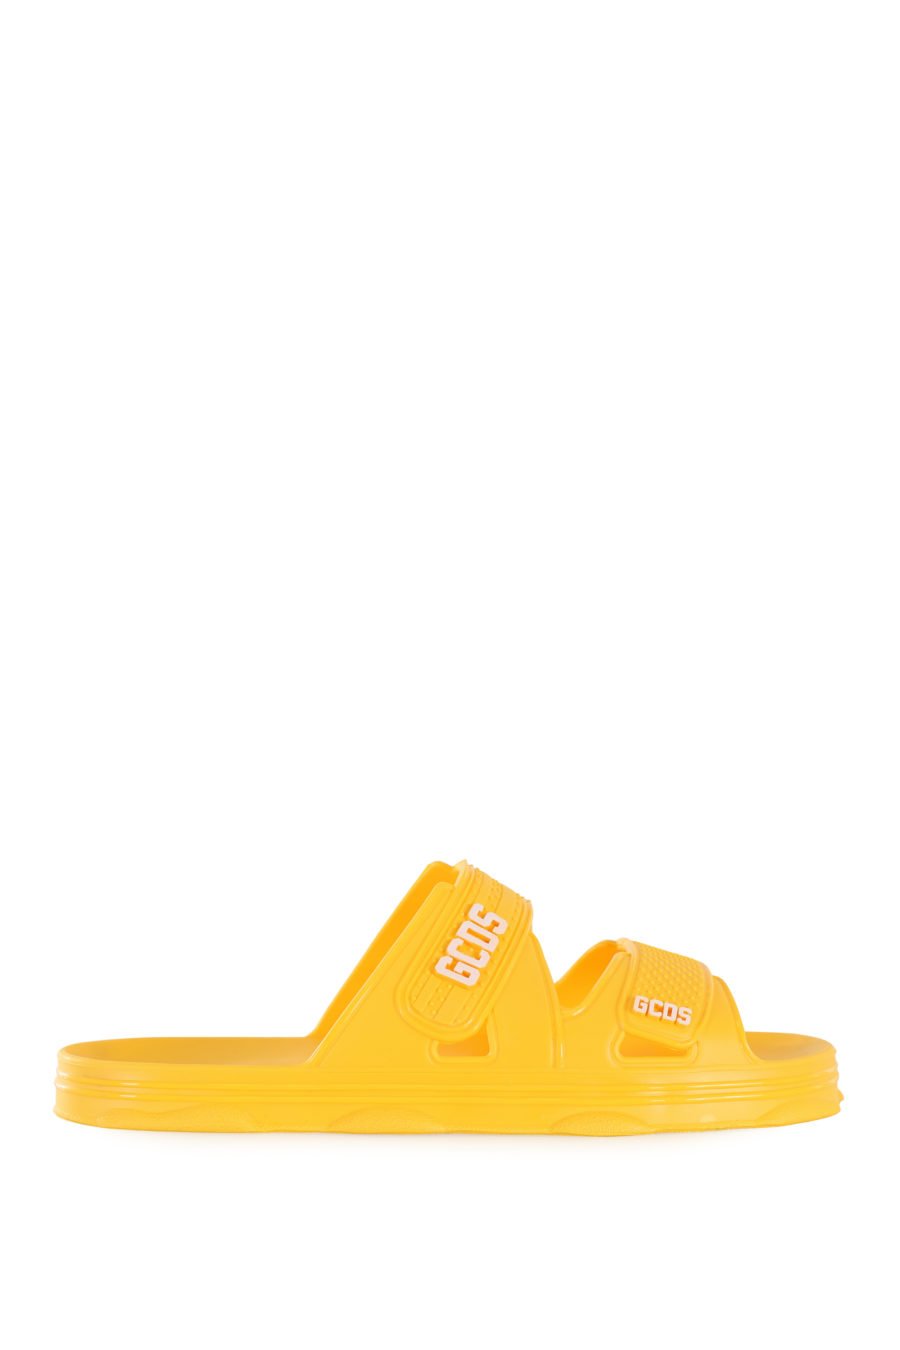 Chanclas amarillas de goma con logo blanco - IMG 1684